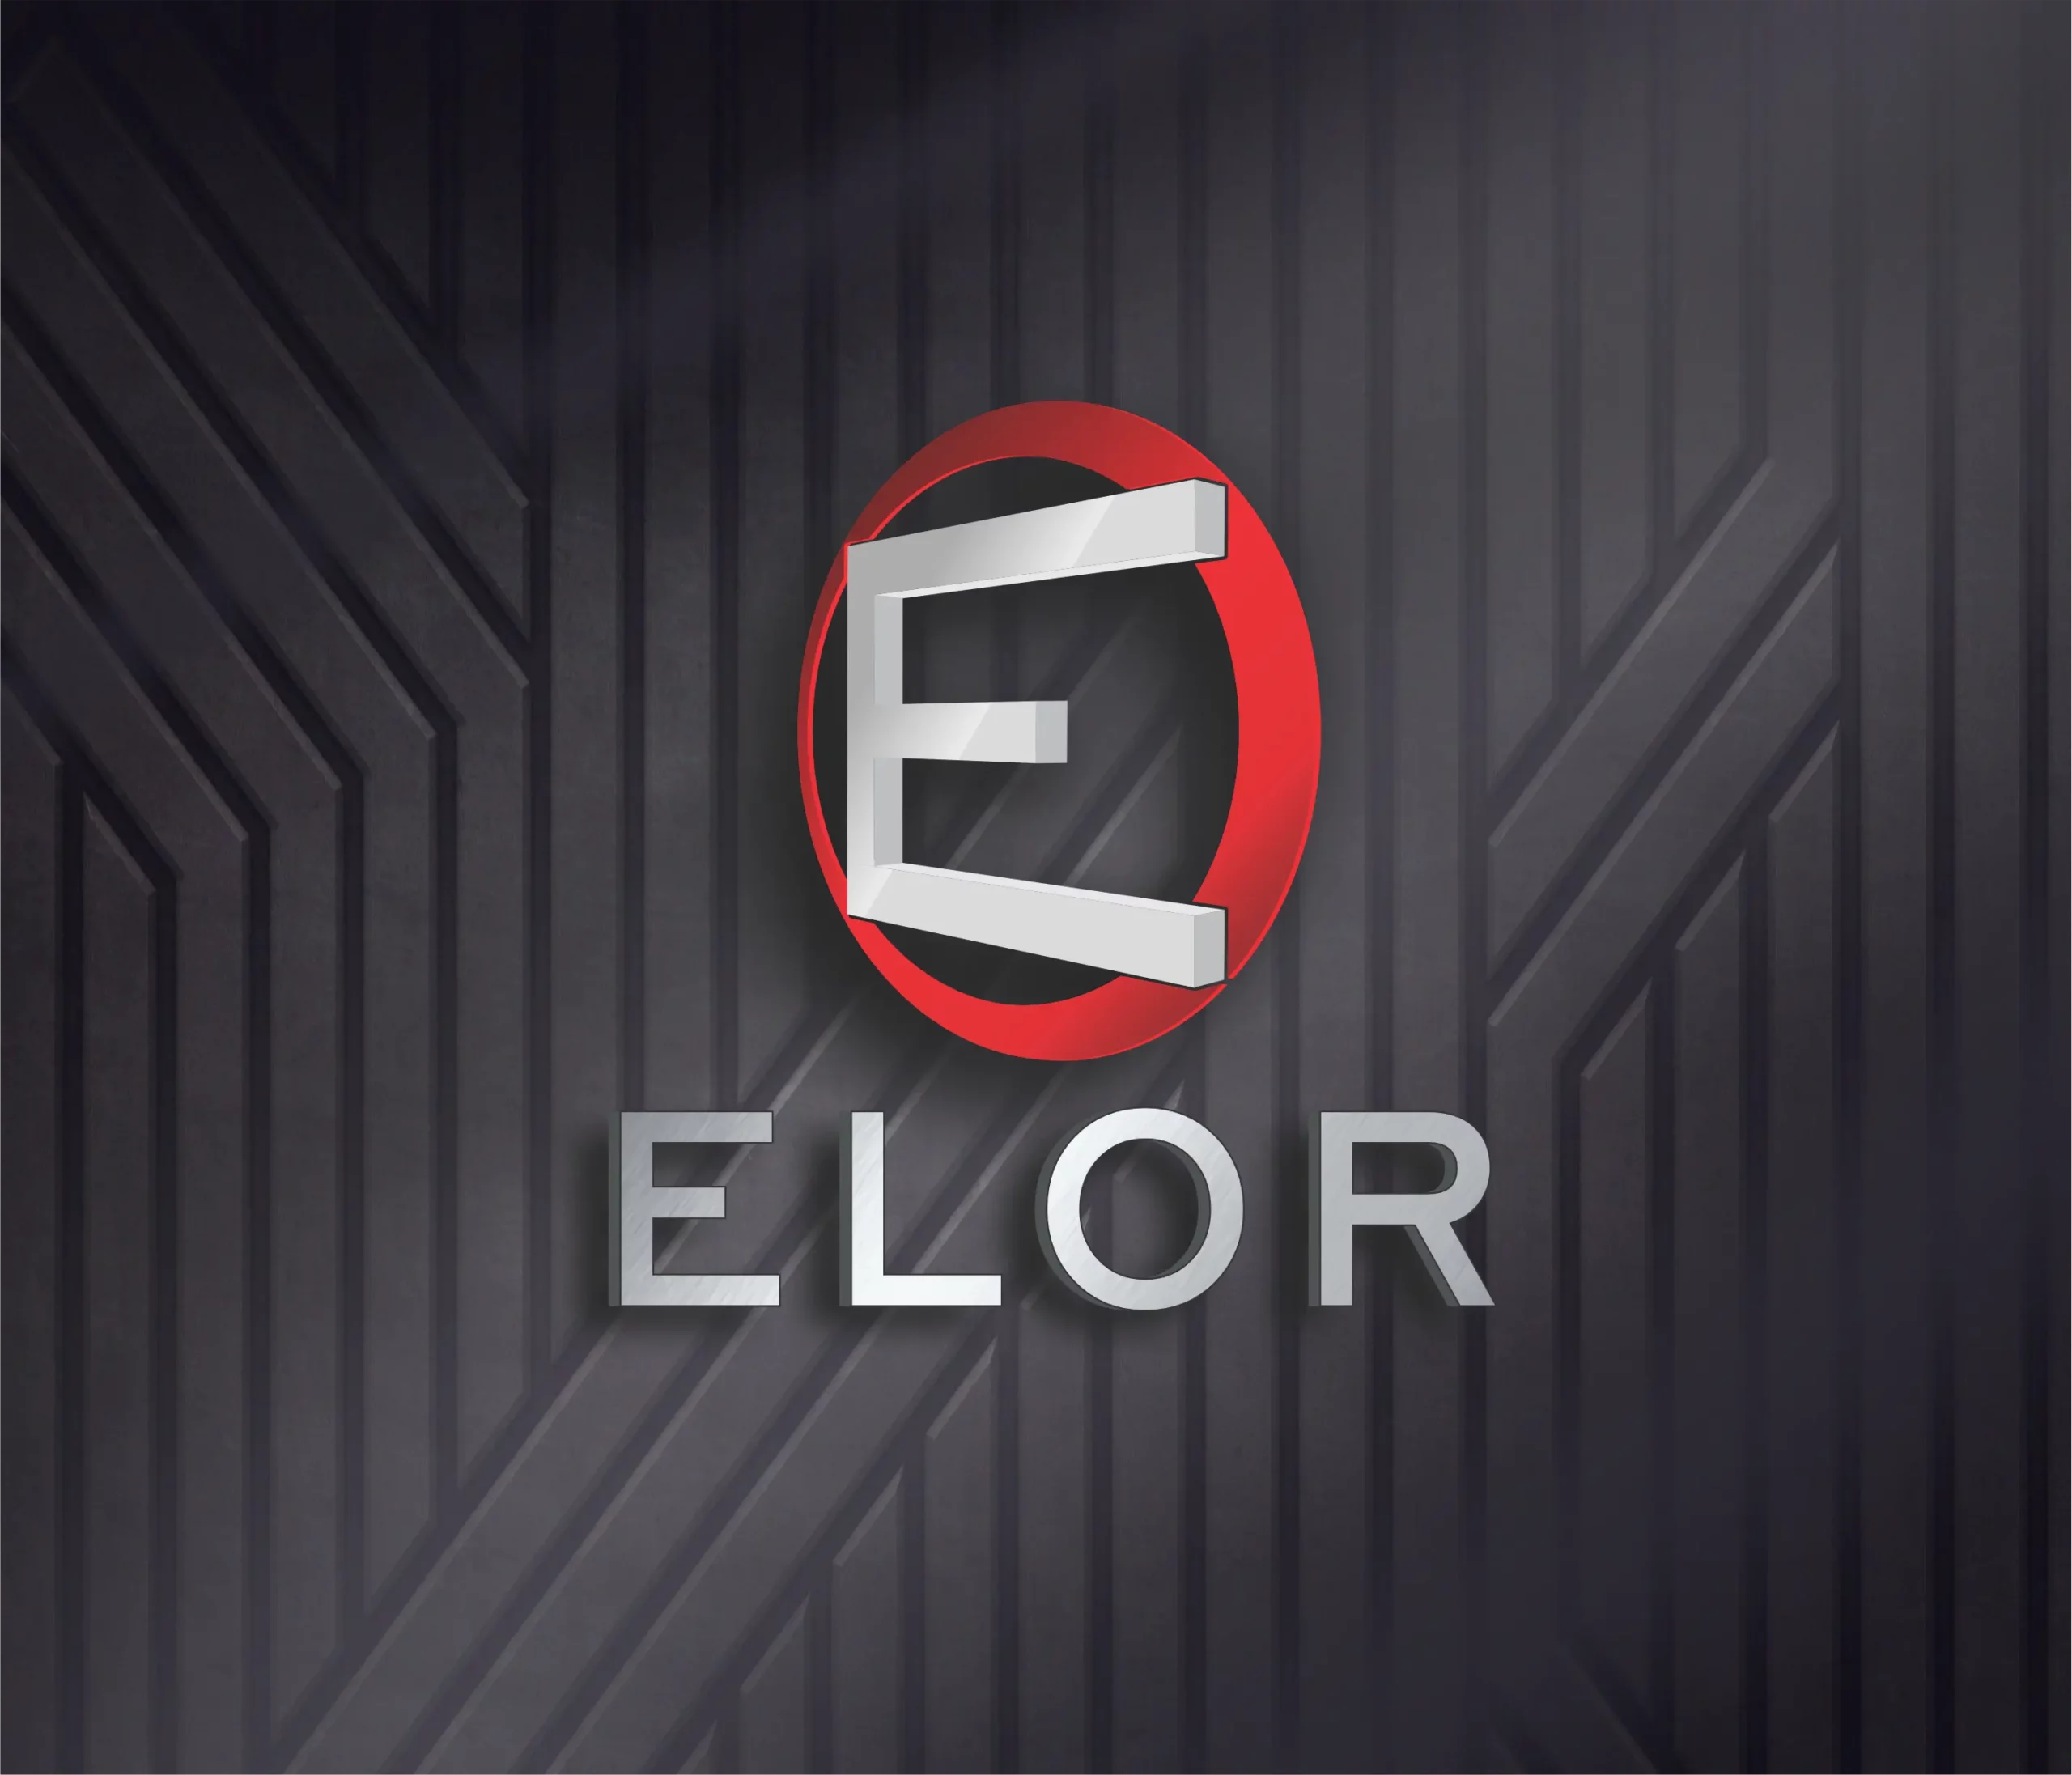 elor logo